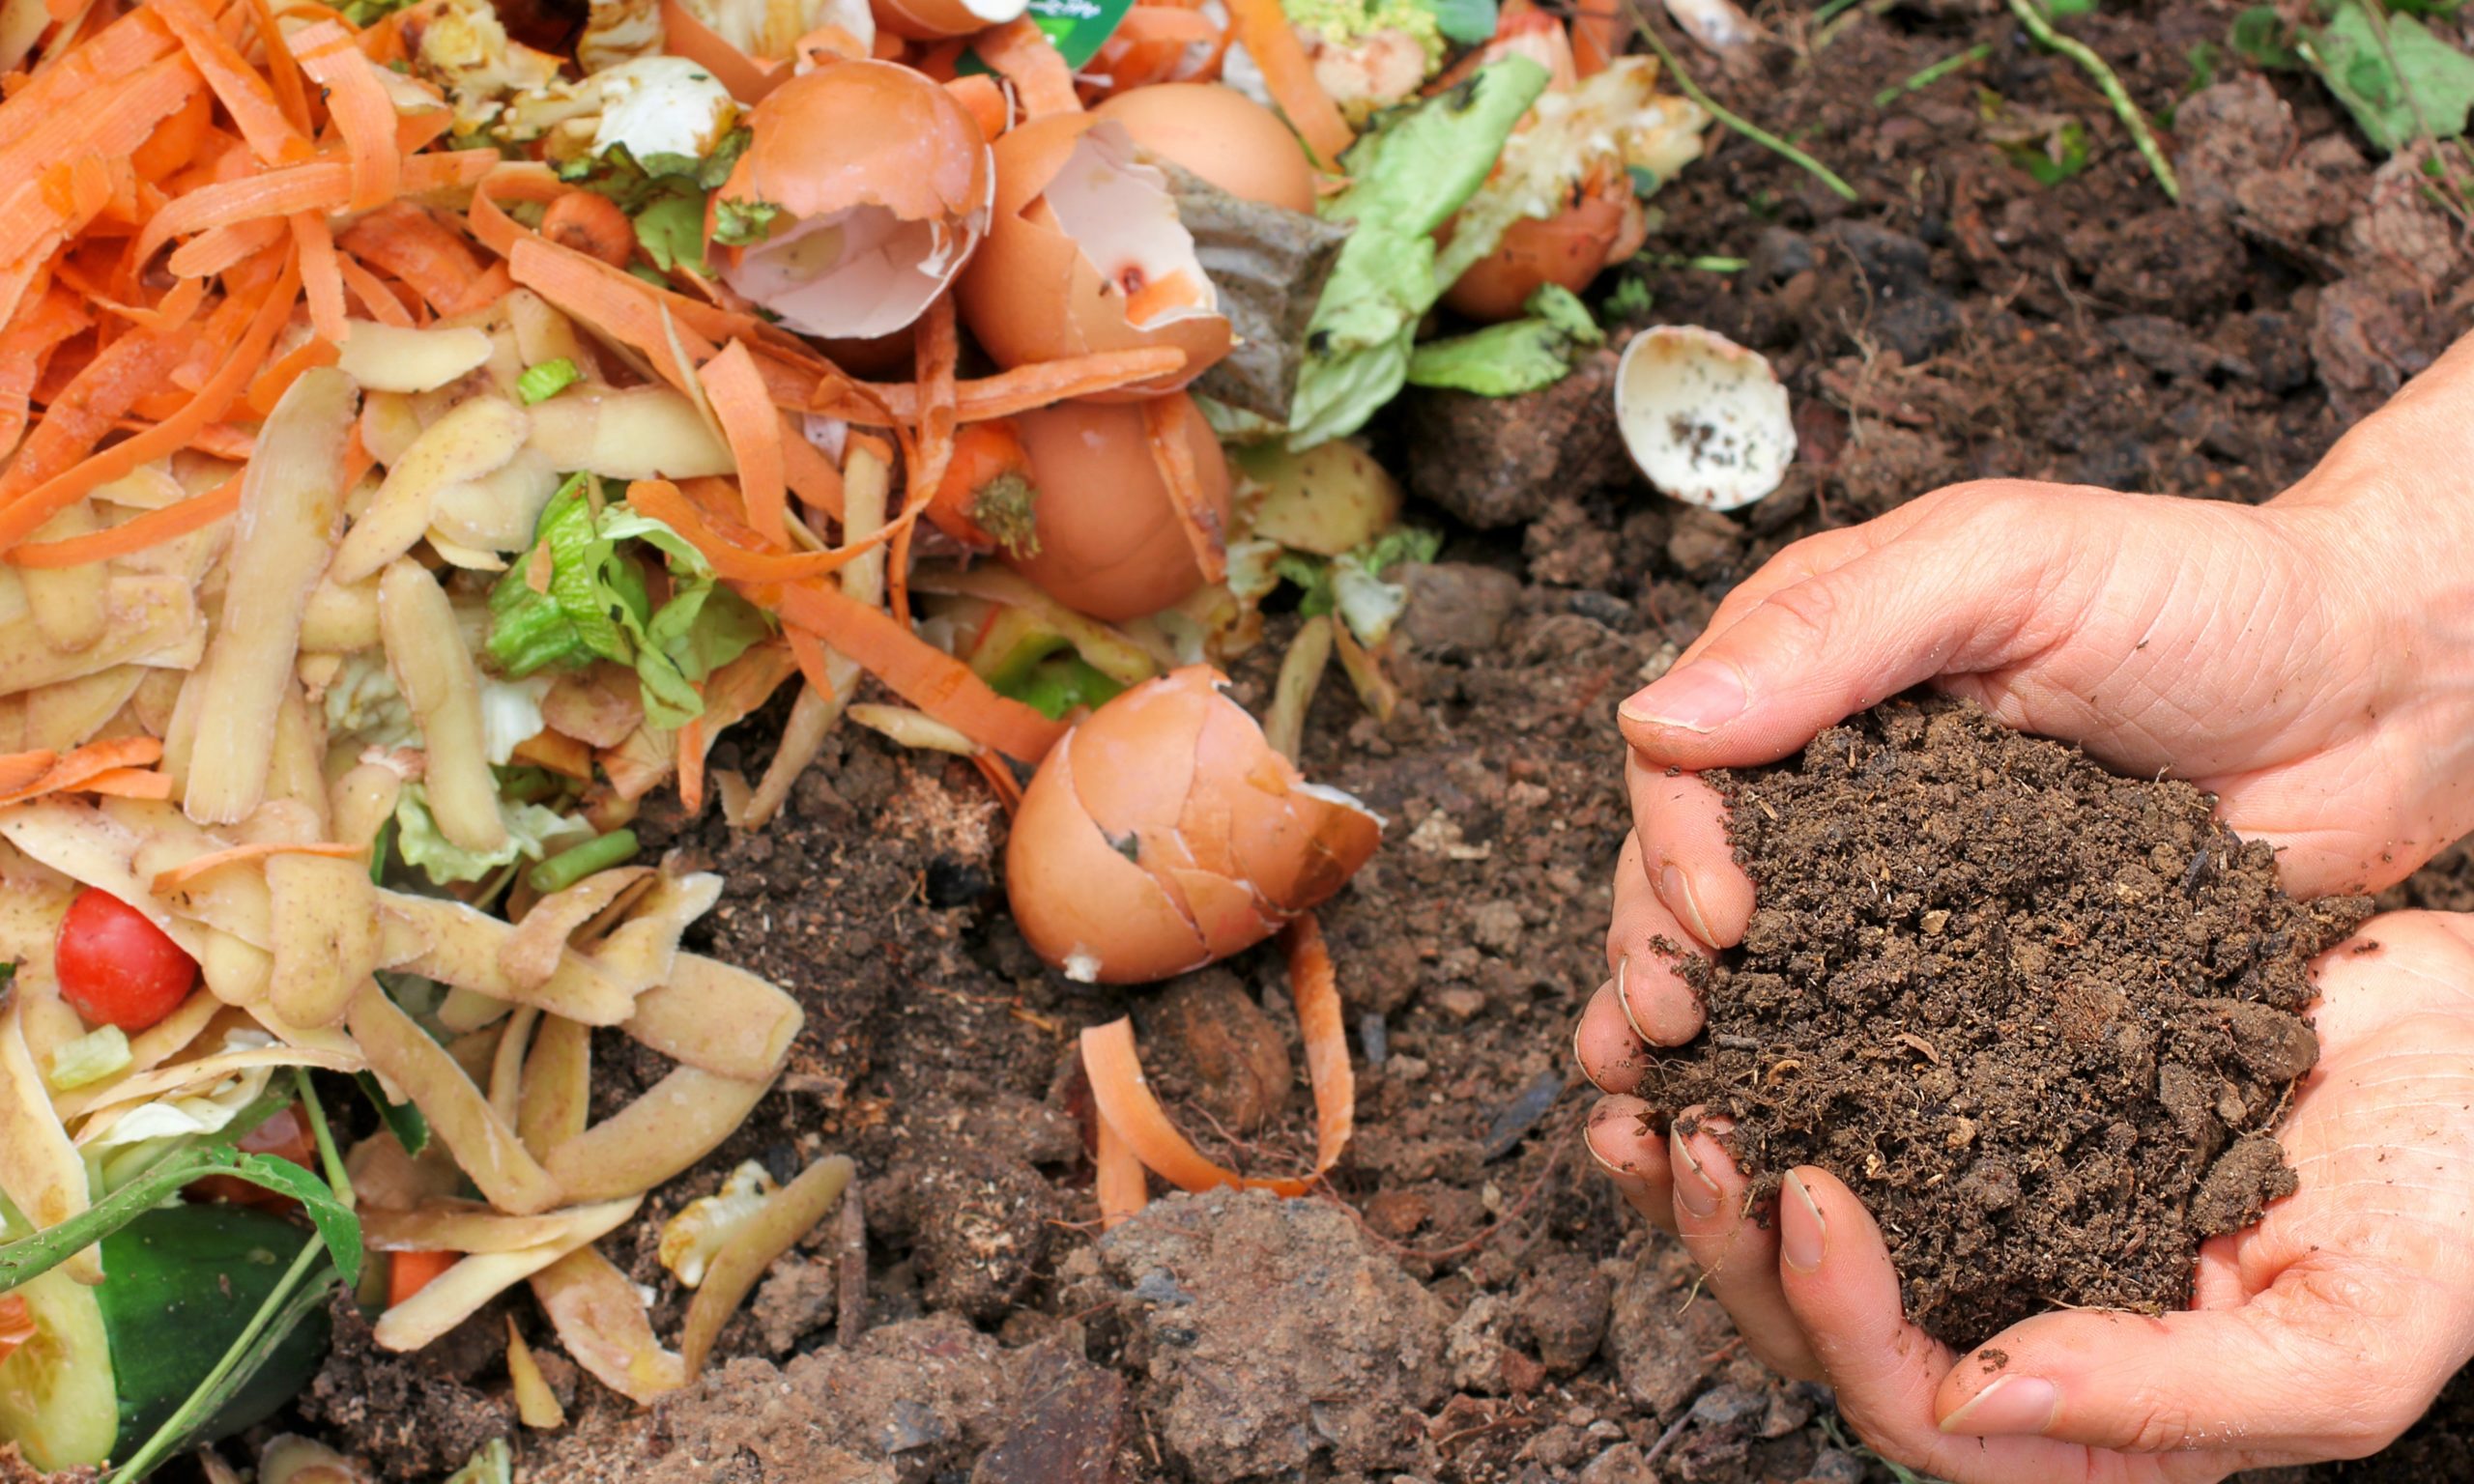 Collectif ou individuel, le compostage des biodéchets s’impose. Photo : pixabay